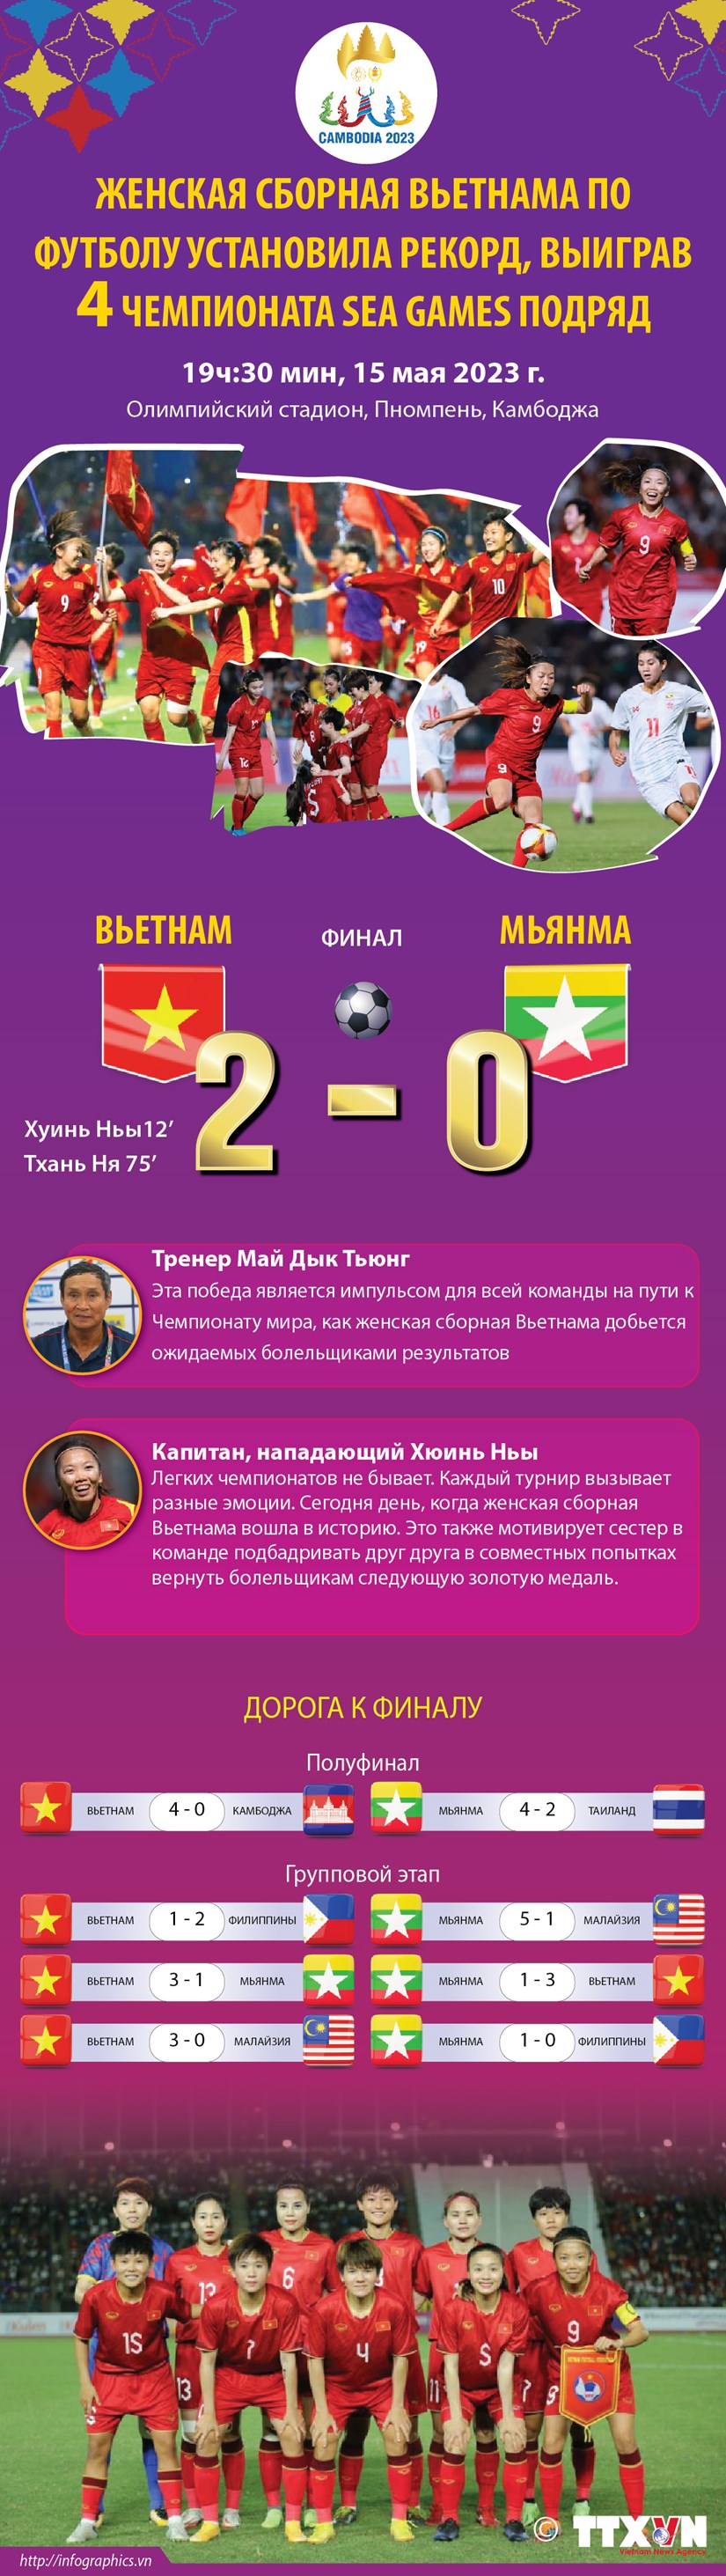 Женская сборная Вьетнама по футболу установила рекорд, выиграв четыре чемпионата SEA Games подряд hinh anh 1